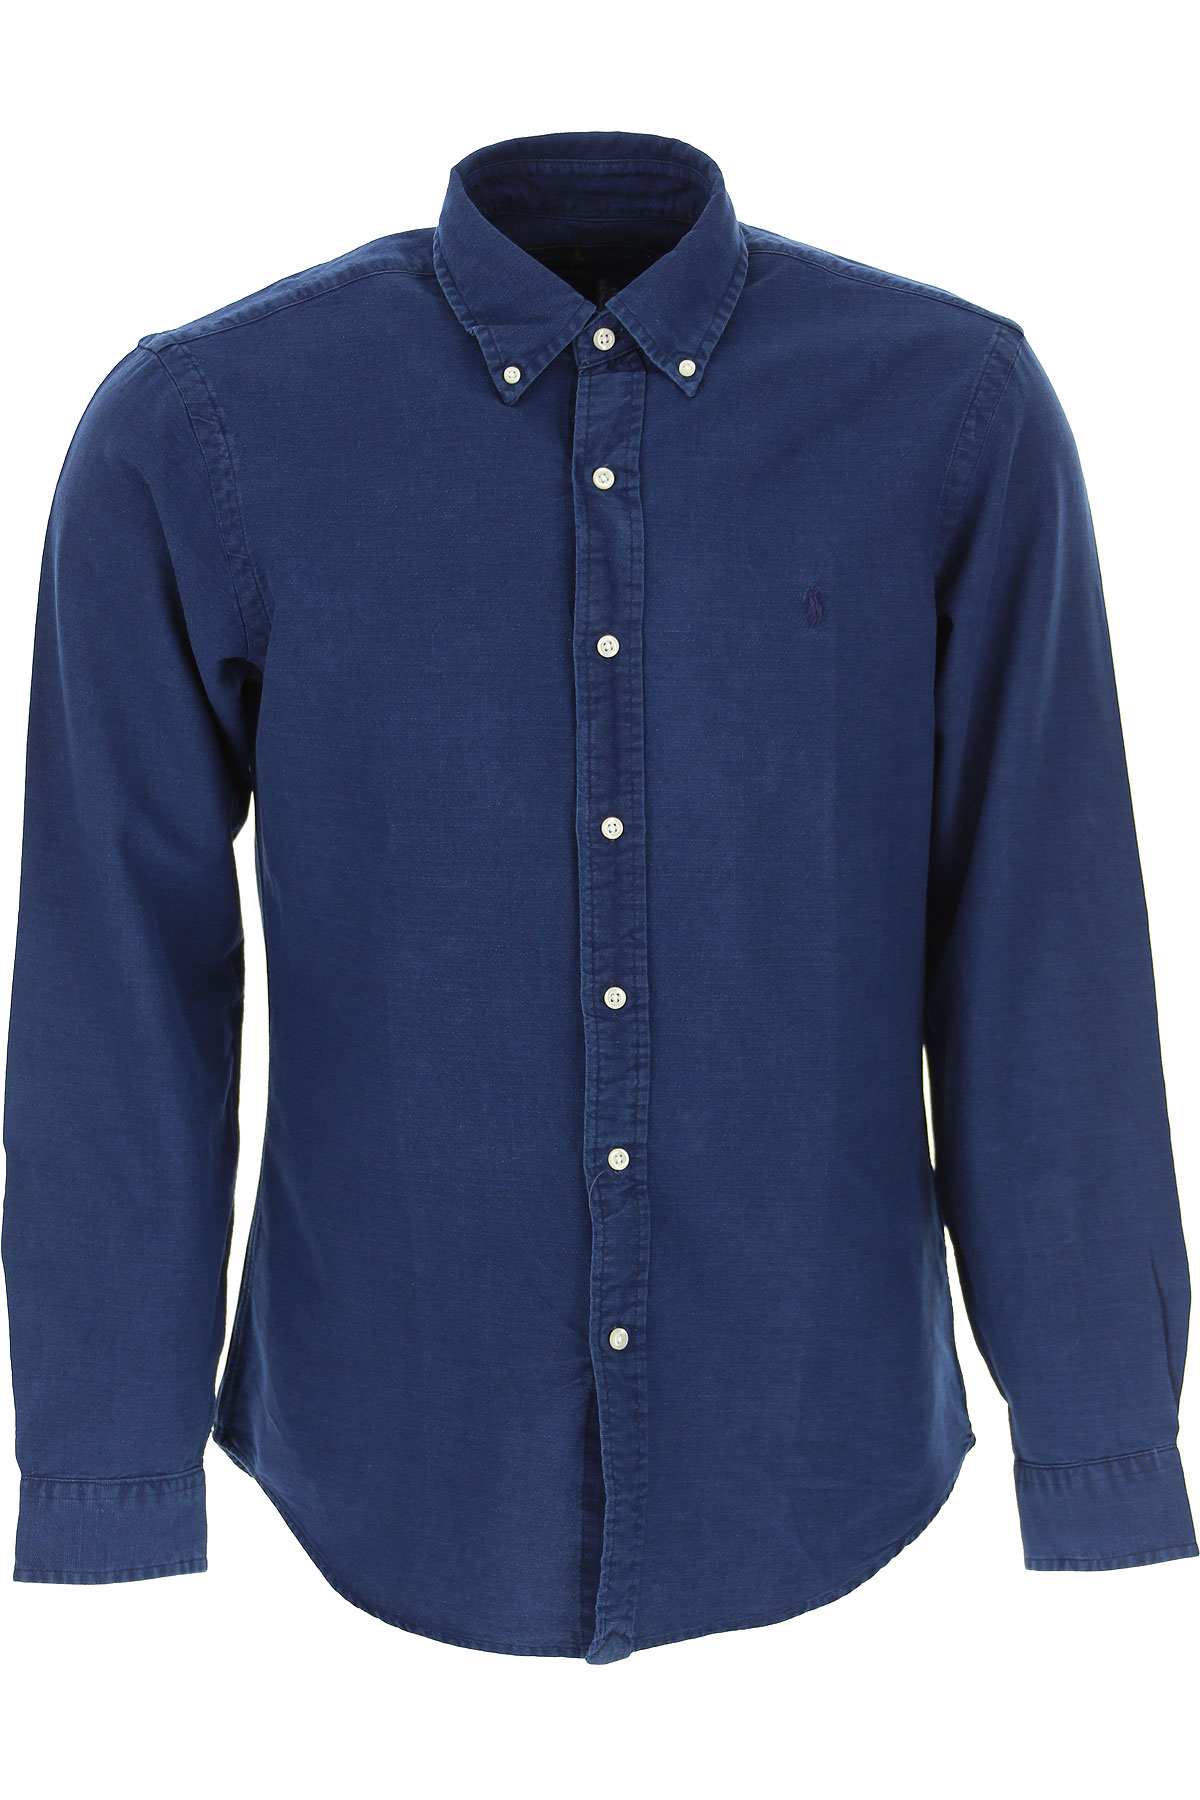 Ralph Lauren Hemde für Herren, Oberhemd Günstig im Sale, Indigo Blau, Baumwolle, 2017, L M S XL